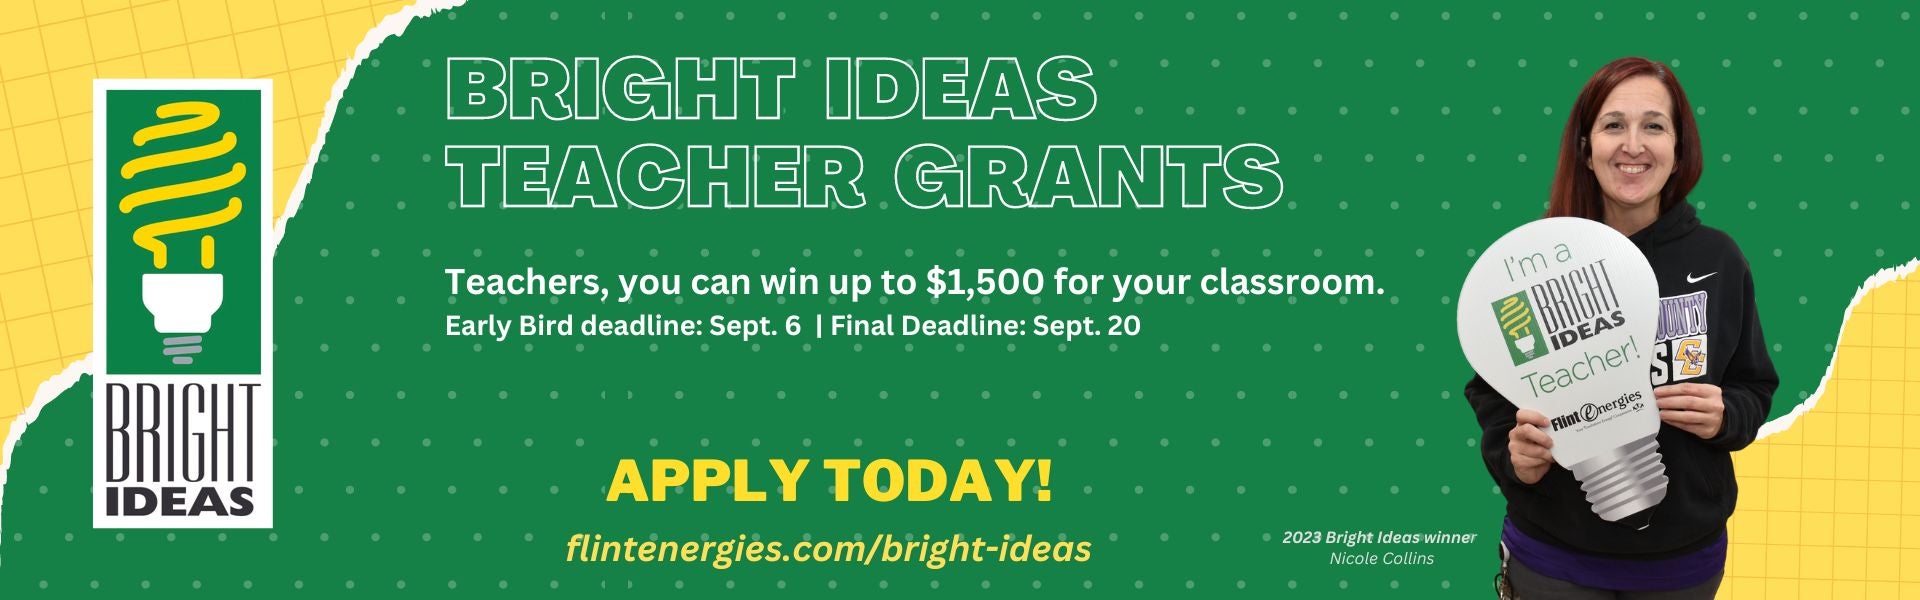 Bright Ideas Grant slide